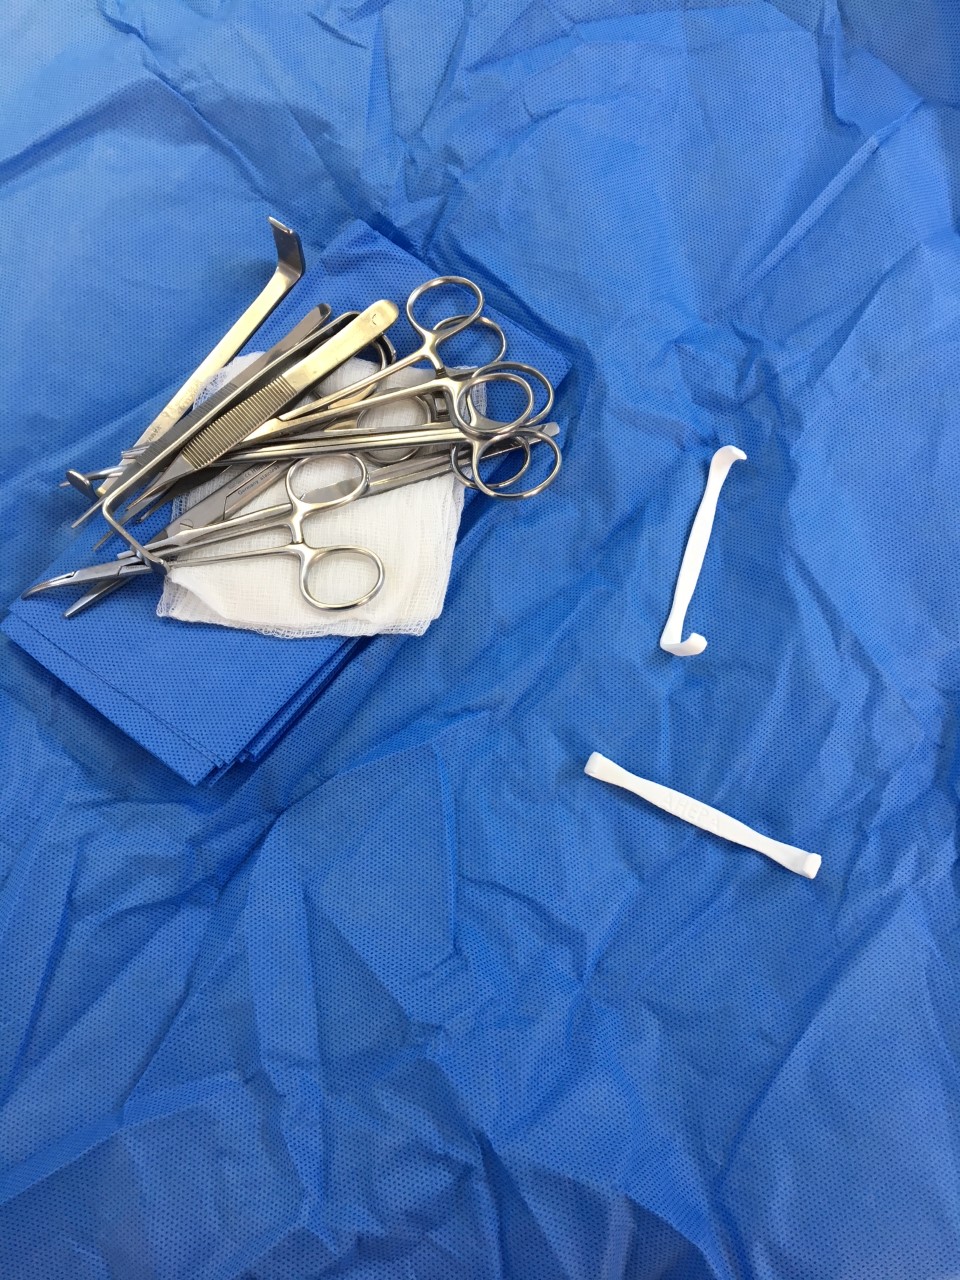 Συμβατικά χειρουργικά εργαλεία 